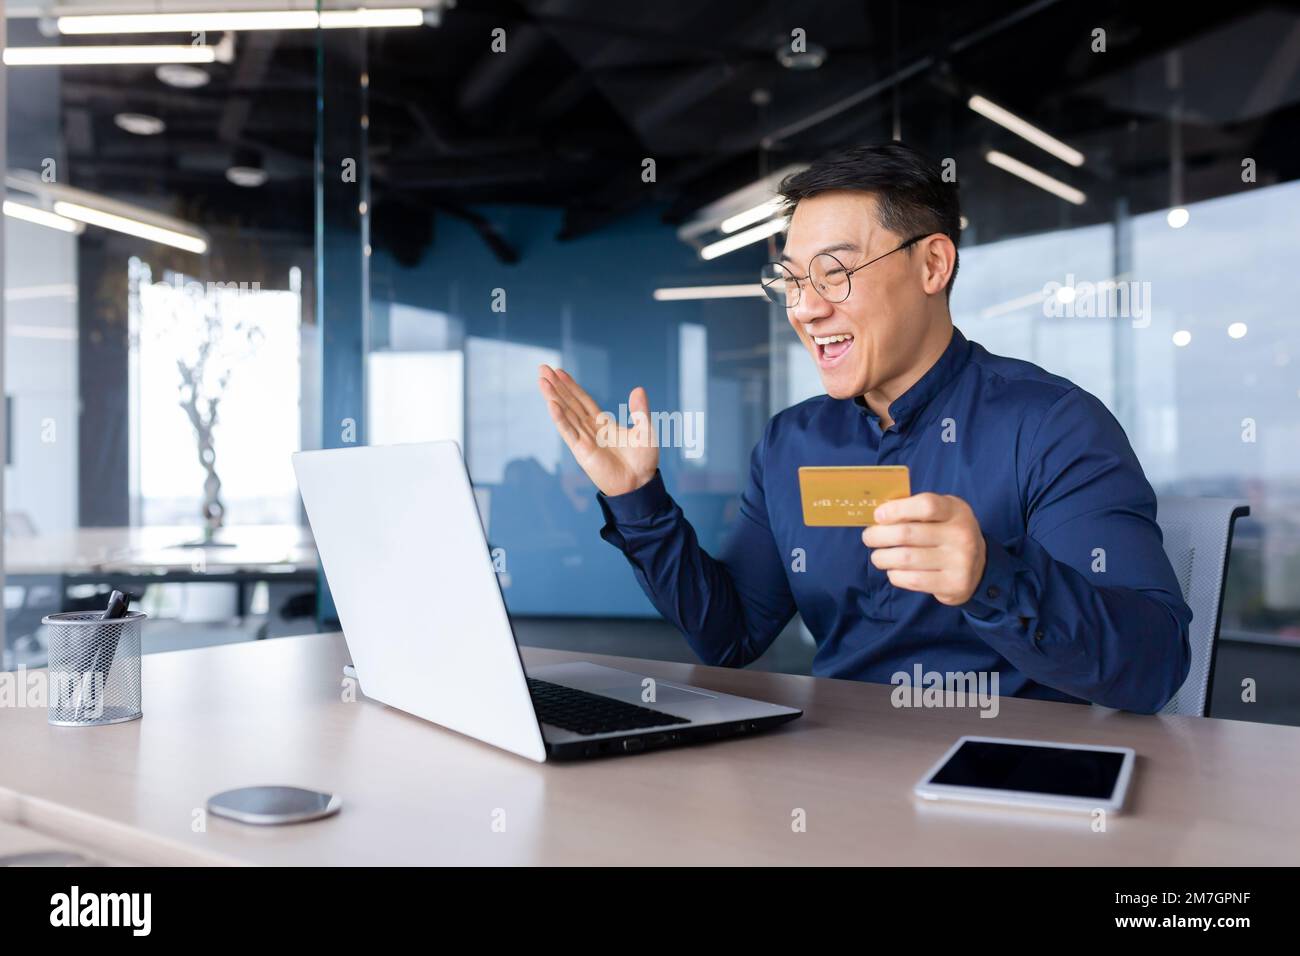 Ein glücklicher junger Asiate sitzt mit einem Laptop im Büro und hält eine Kreditkarte in der Hand. Online-Zahlung, Online-Shopping, Geldtransfer, Kontoüberprüfung. Stockfoto